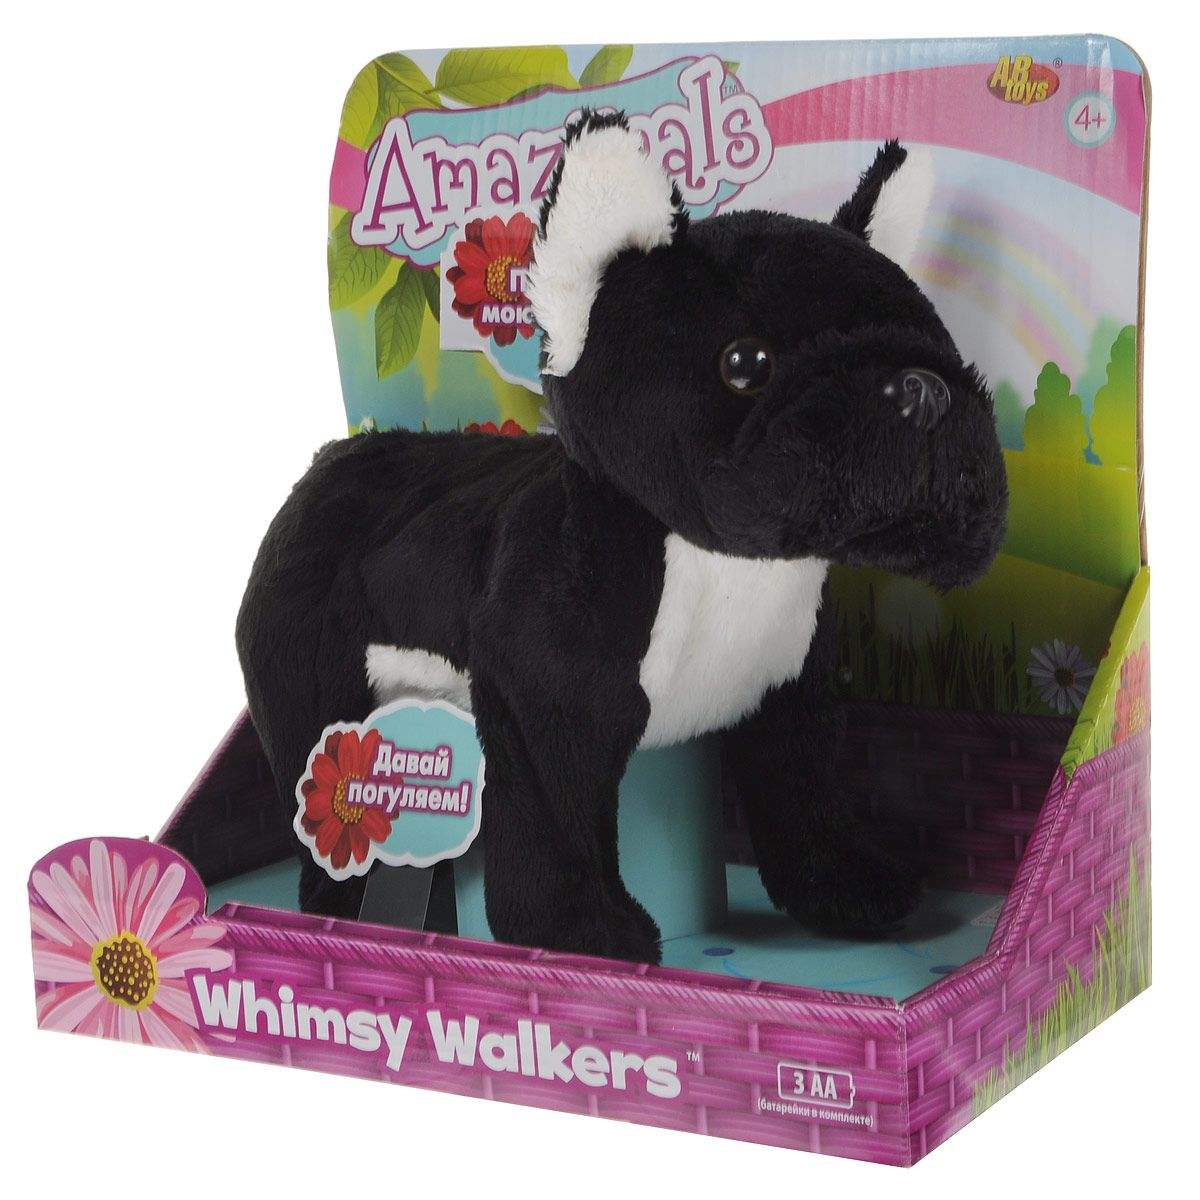 Мягкая интерактивная игрушка Whimsy Walkers - Французский бульдог (звук)  купить в интернет-магазине MegaToys24.ru недорого.